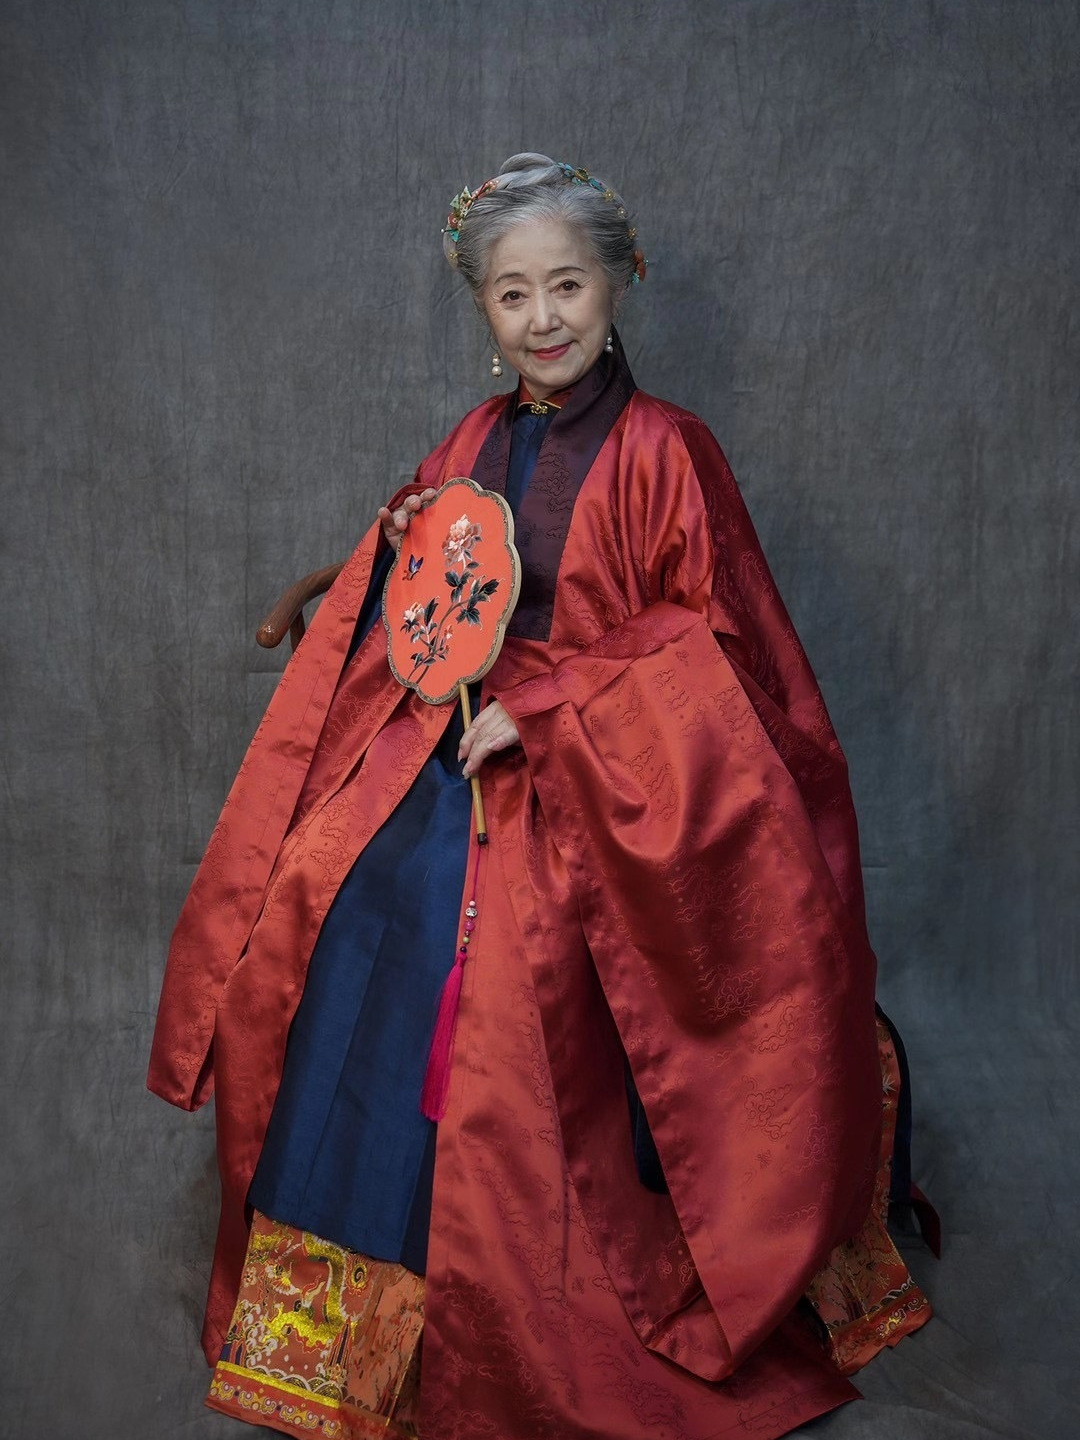 76岁奶奶穿汉服走红网络,举止端庄优雅,像《红楼梦》的老夫人